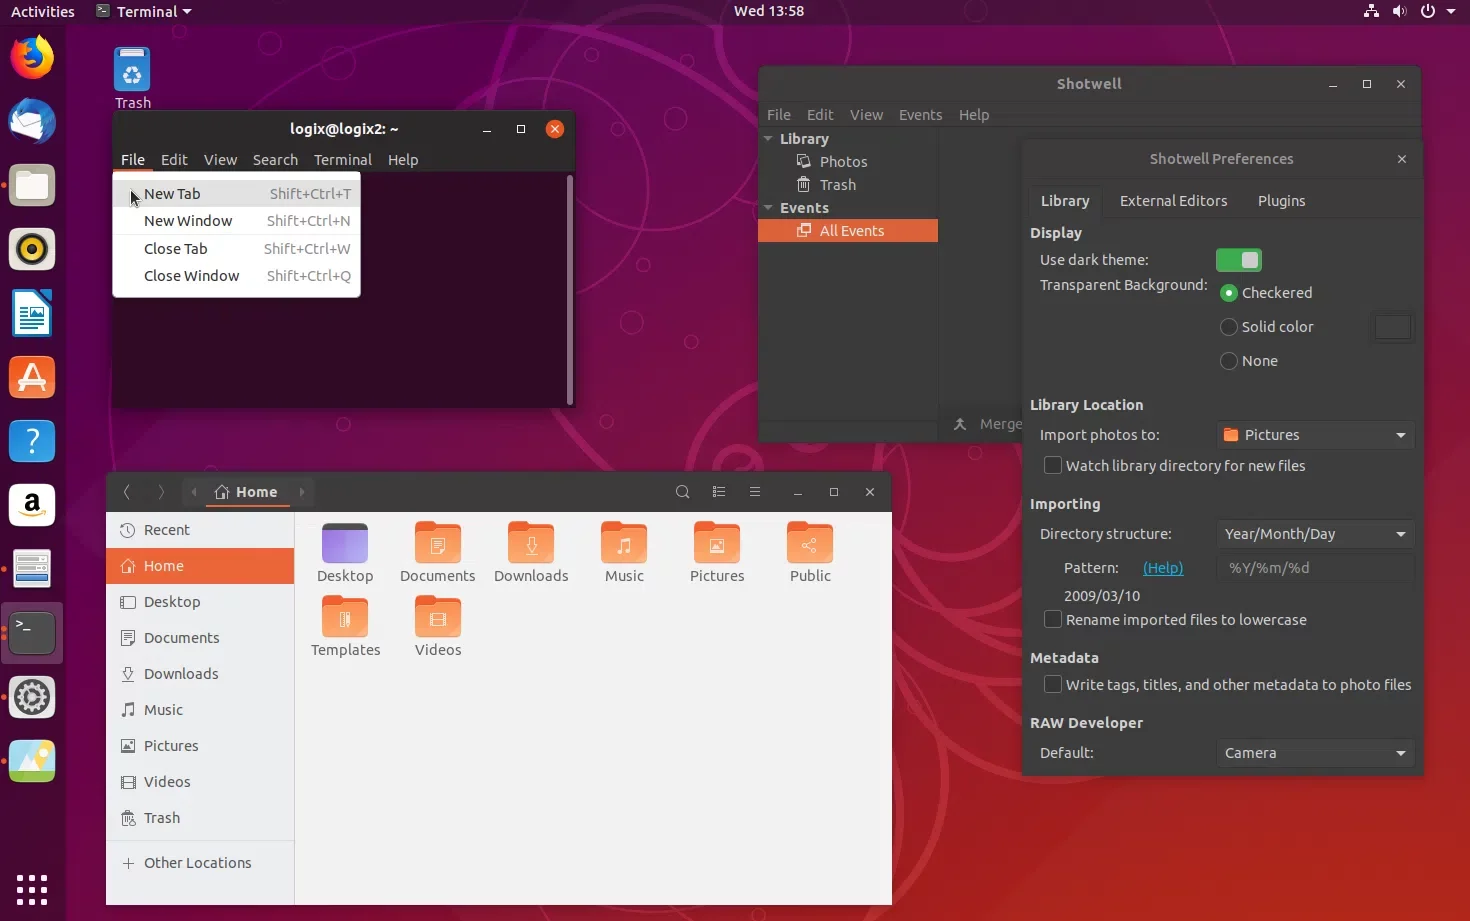 Captura de tela do tema Ubuntu 18.10 Yaru